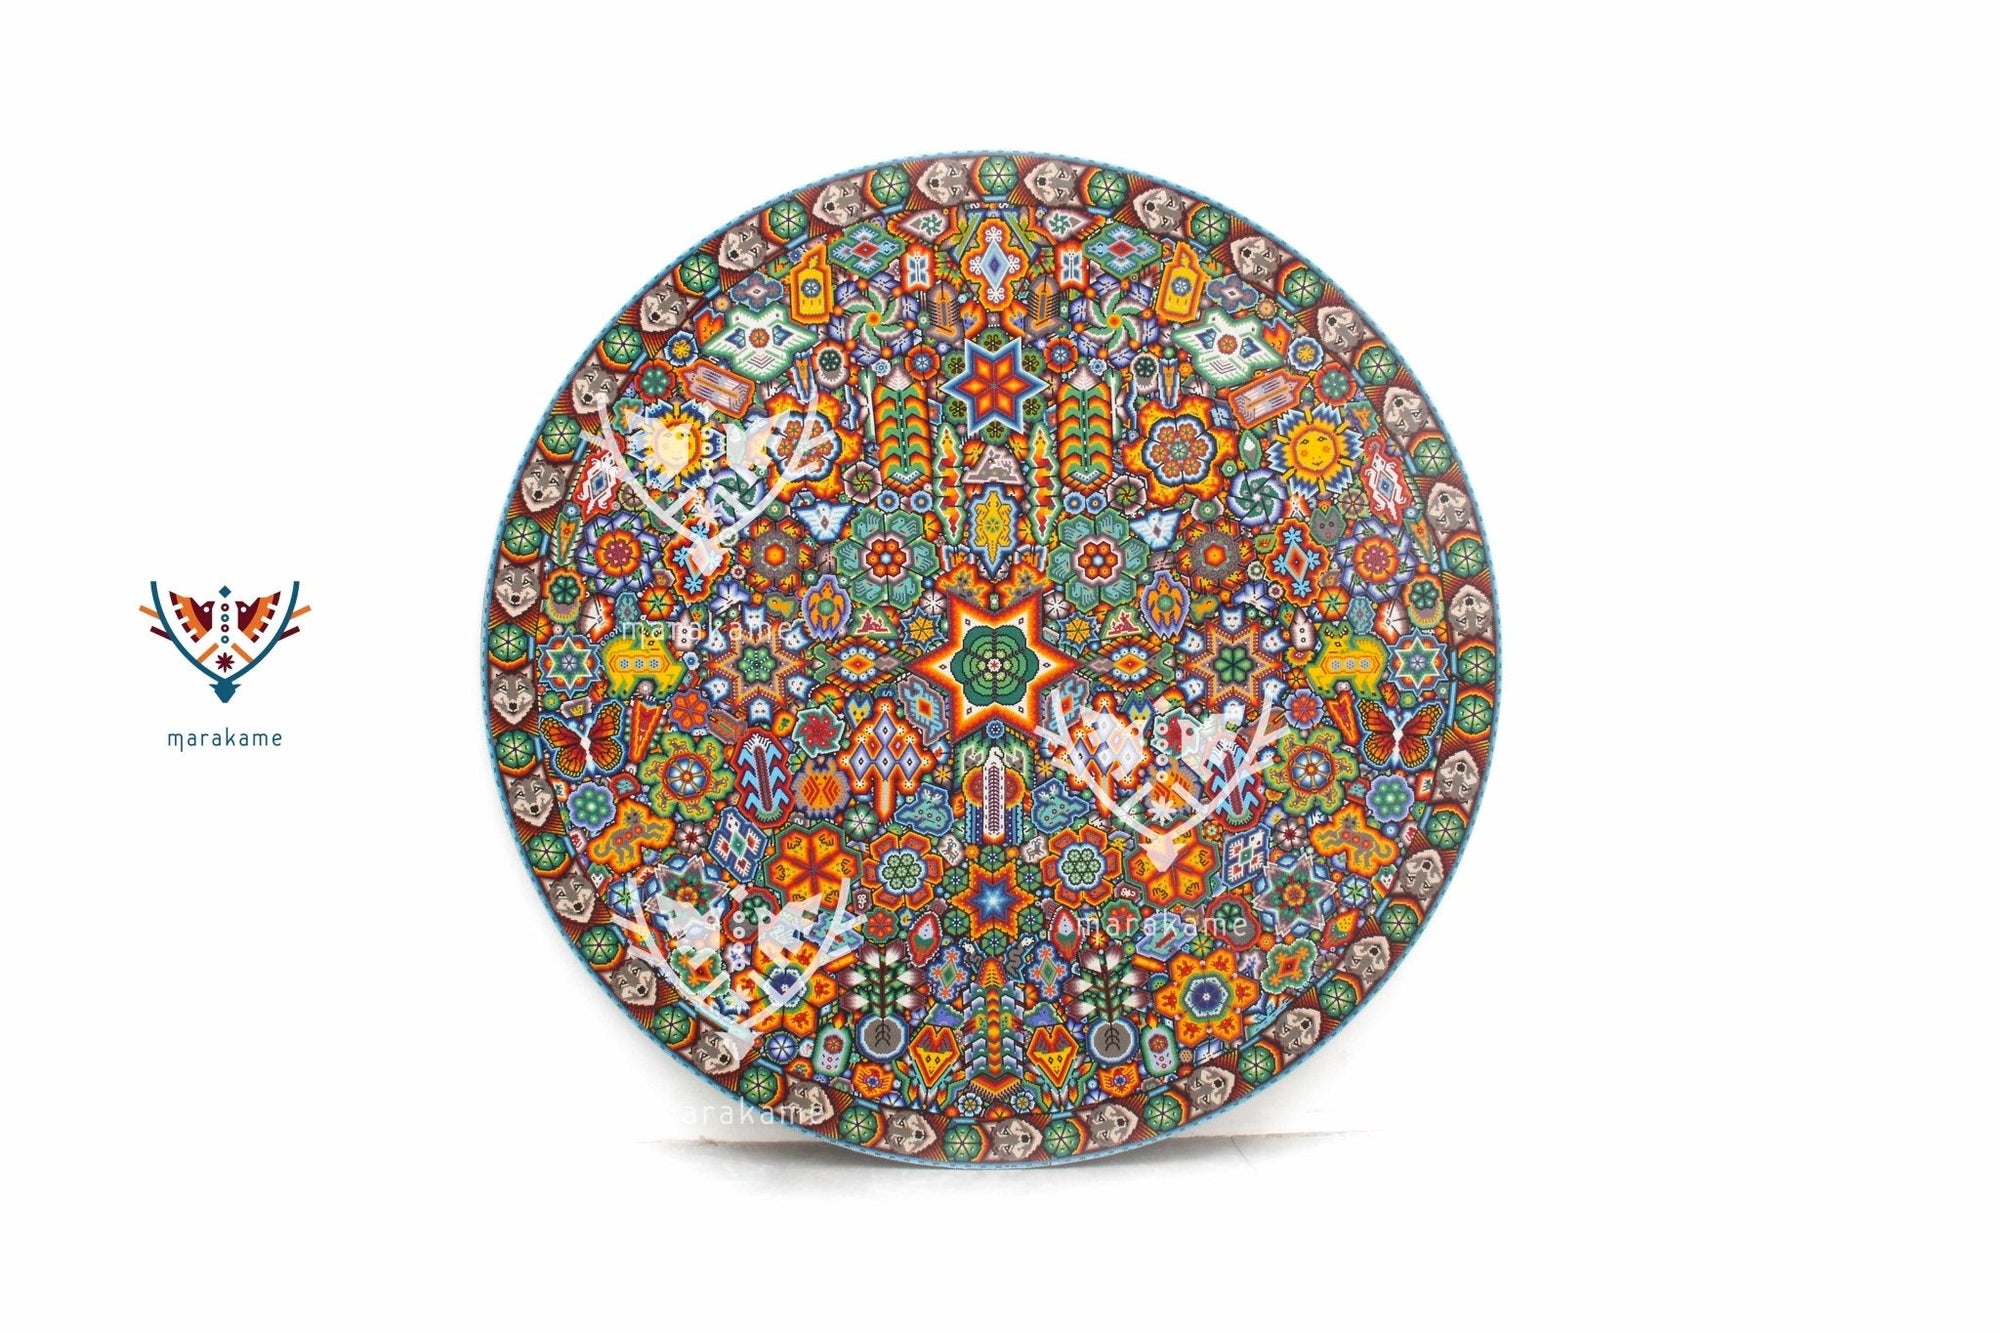 Nierika de Chaquira Círculo Huichol - Hikuri - 120 cm. de diámetro - Arte Huichol - Marakame